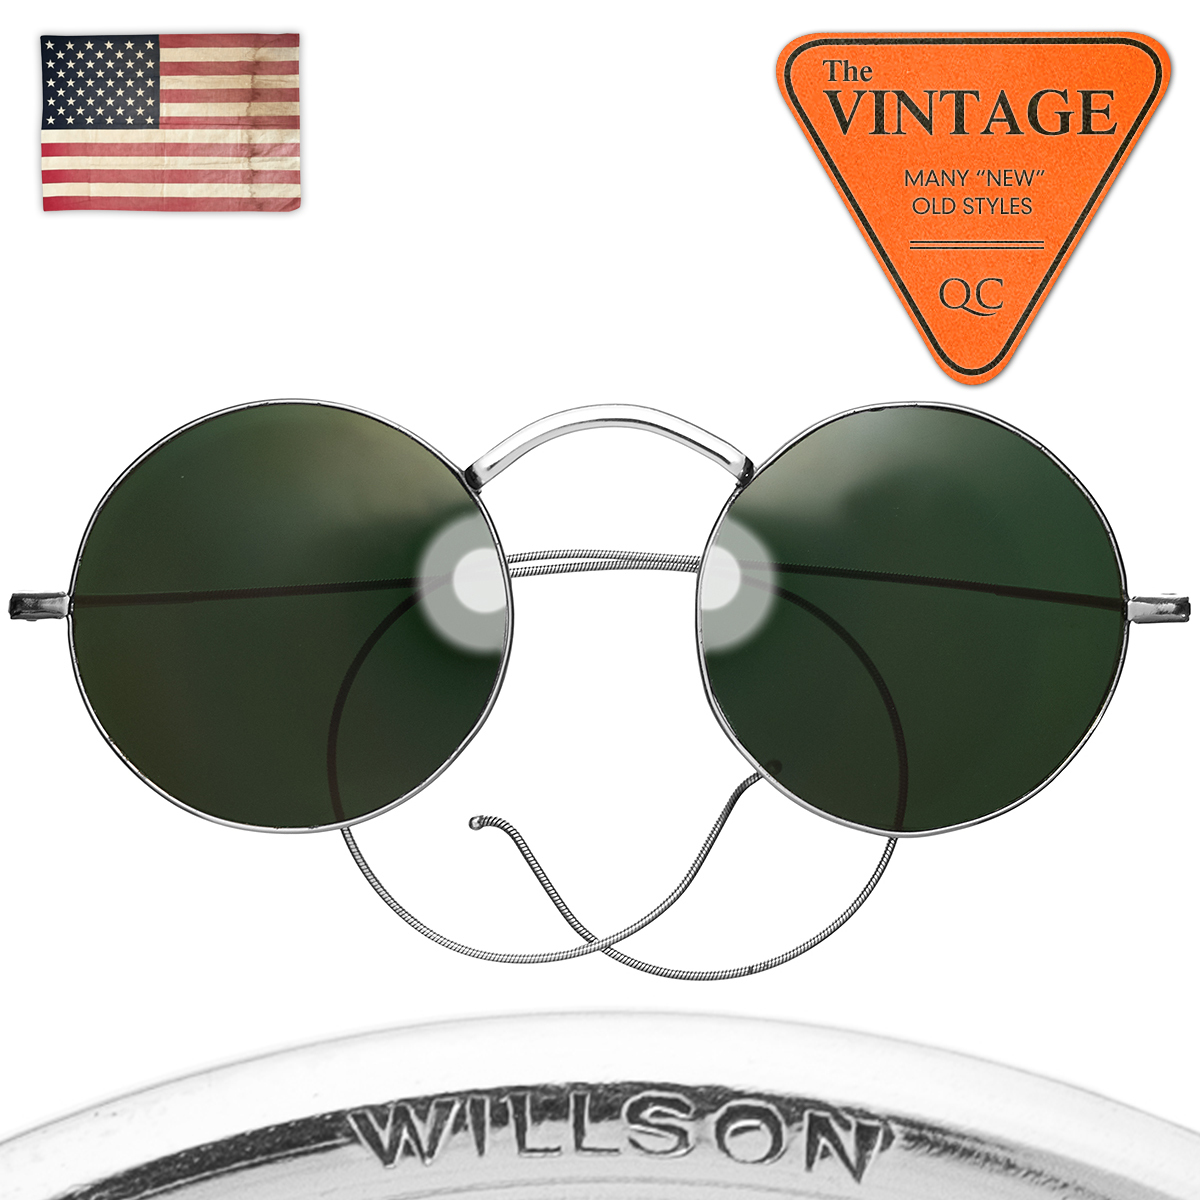 驚きの安さ WILLSON USA 美品ヴィンテージ1930s ガラスレンズ 1155 当時モノ 工業系 インダストリアル アメリカ 丸サングラス 丸メガネ 正丸 46mmアイ 金属フレーム